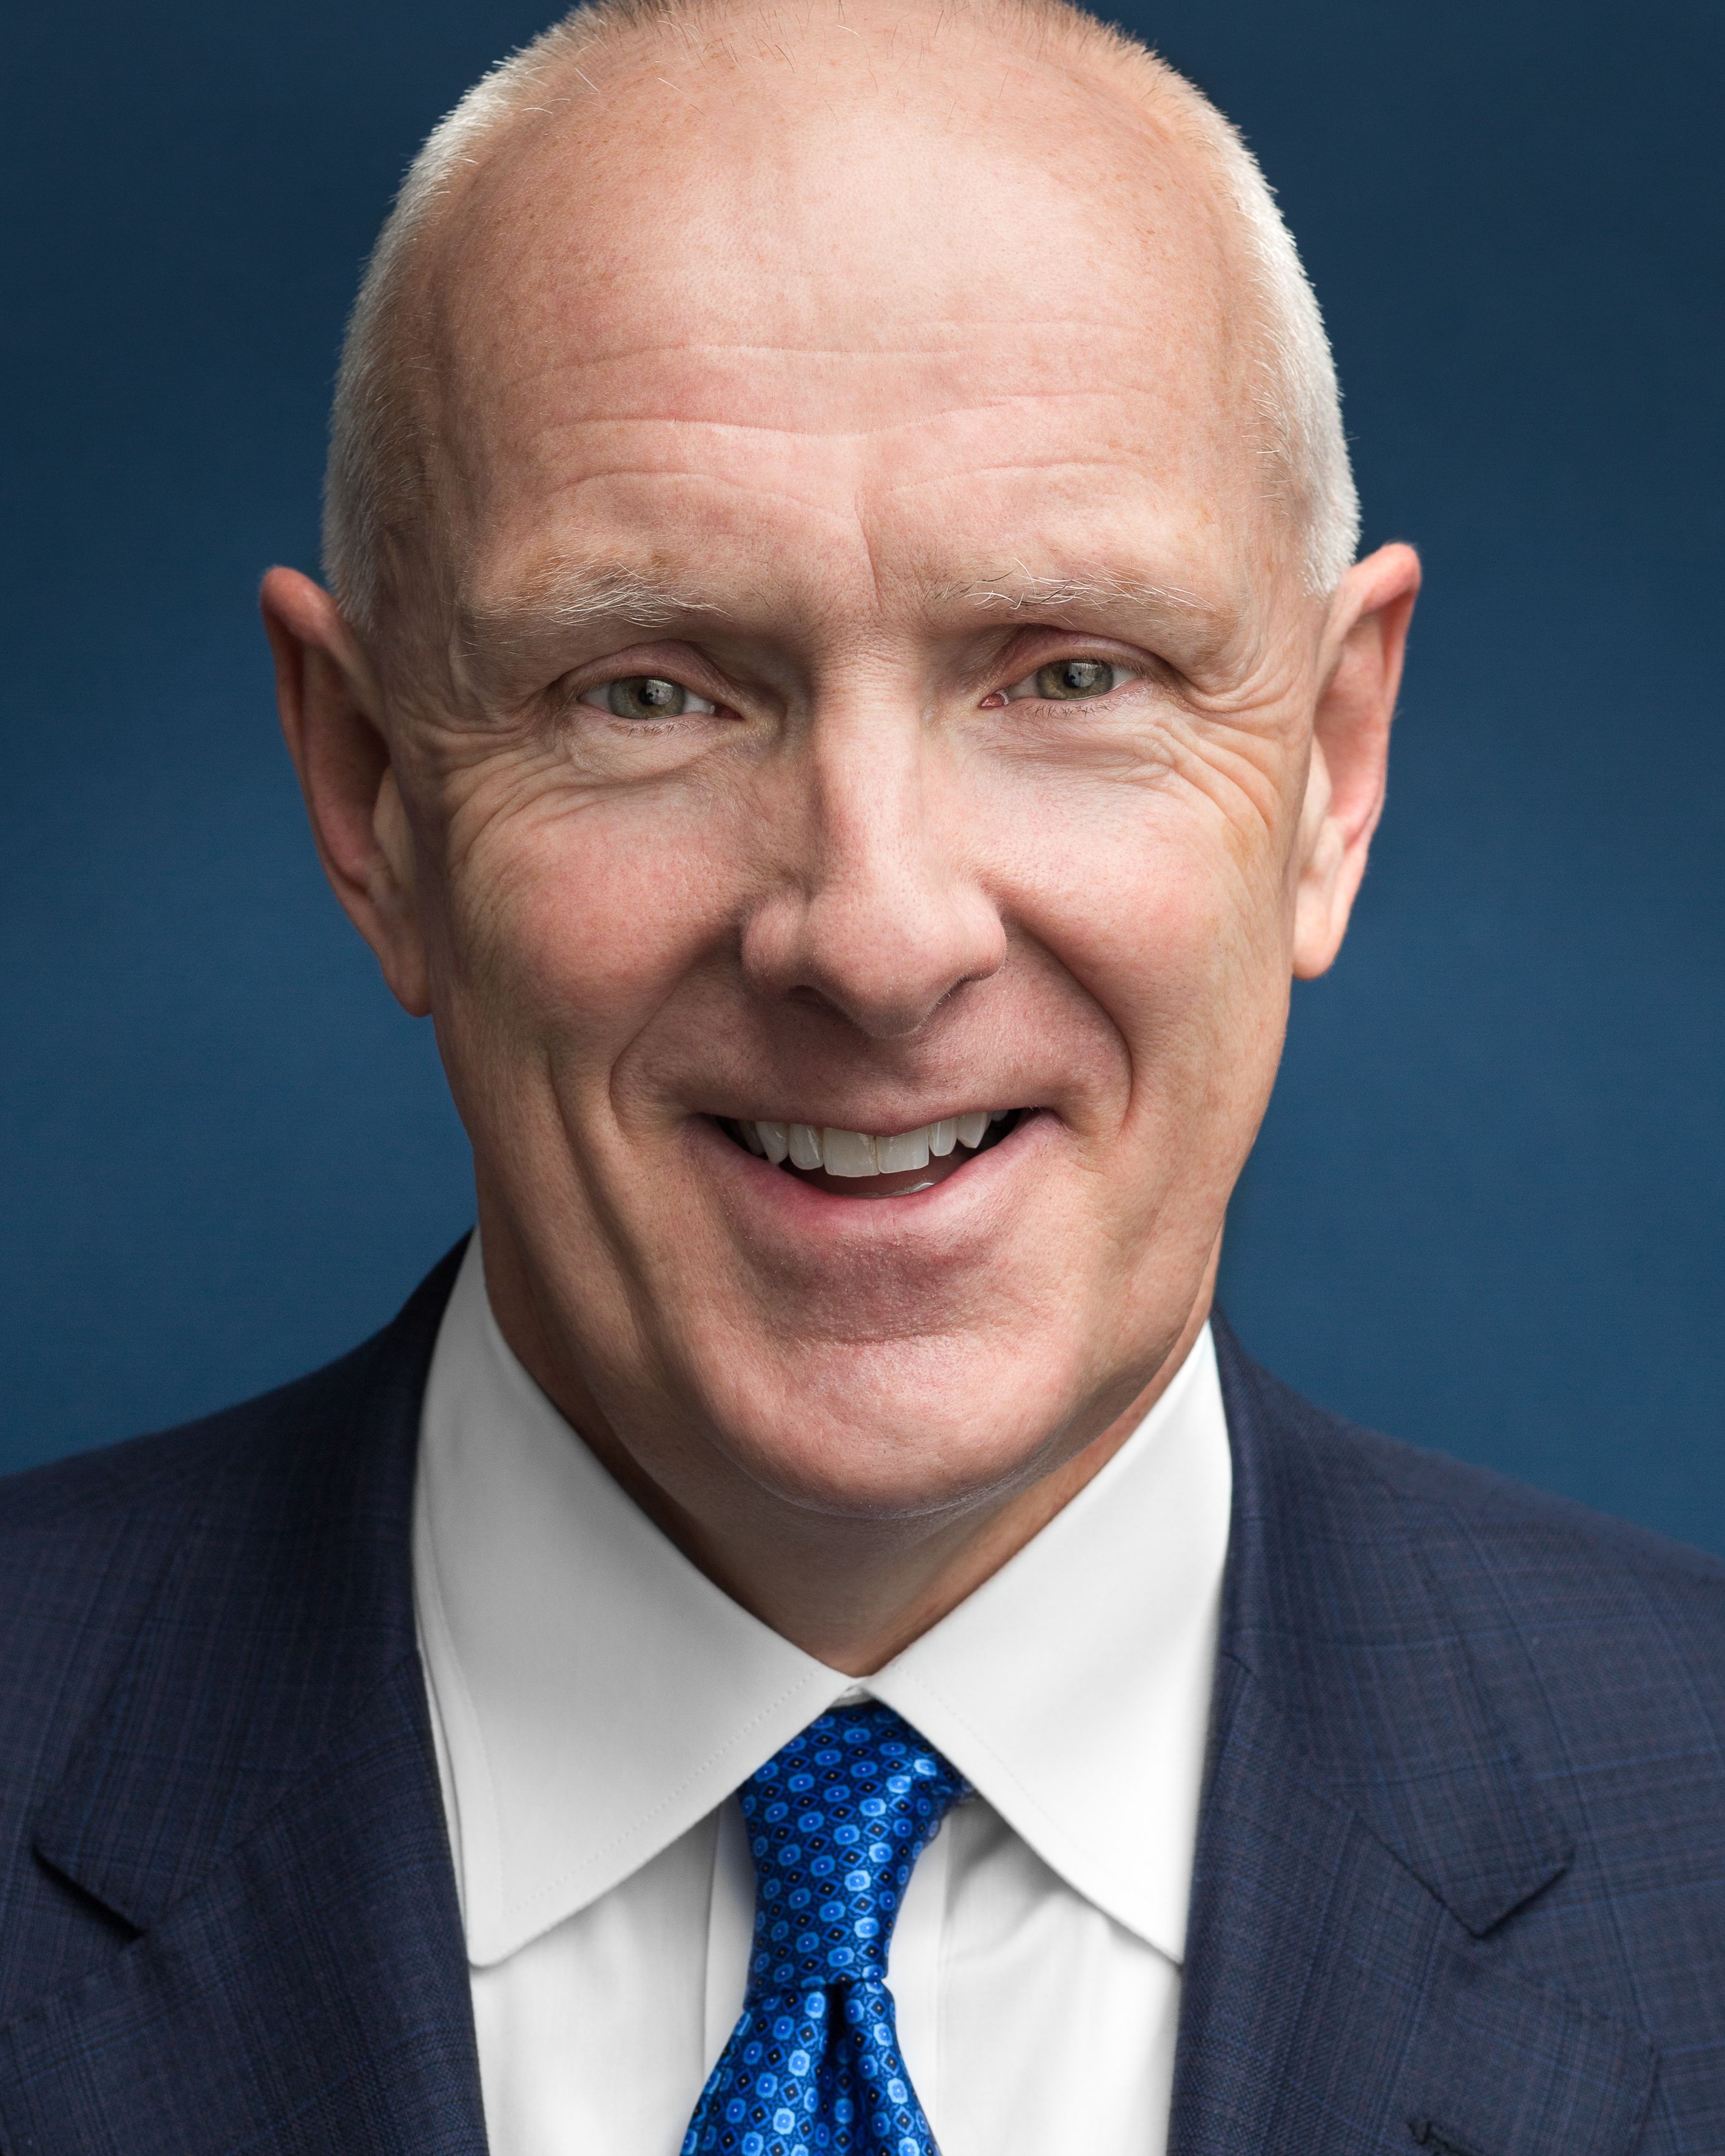 Warner Thomas, CEO of Ochsner Health